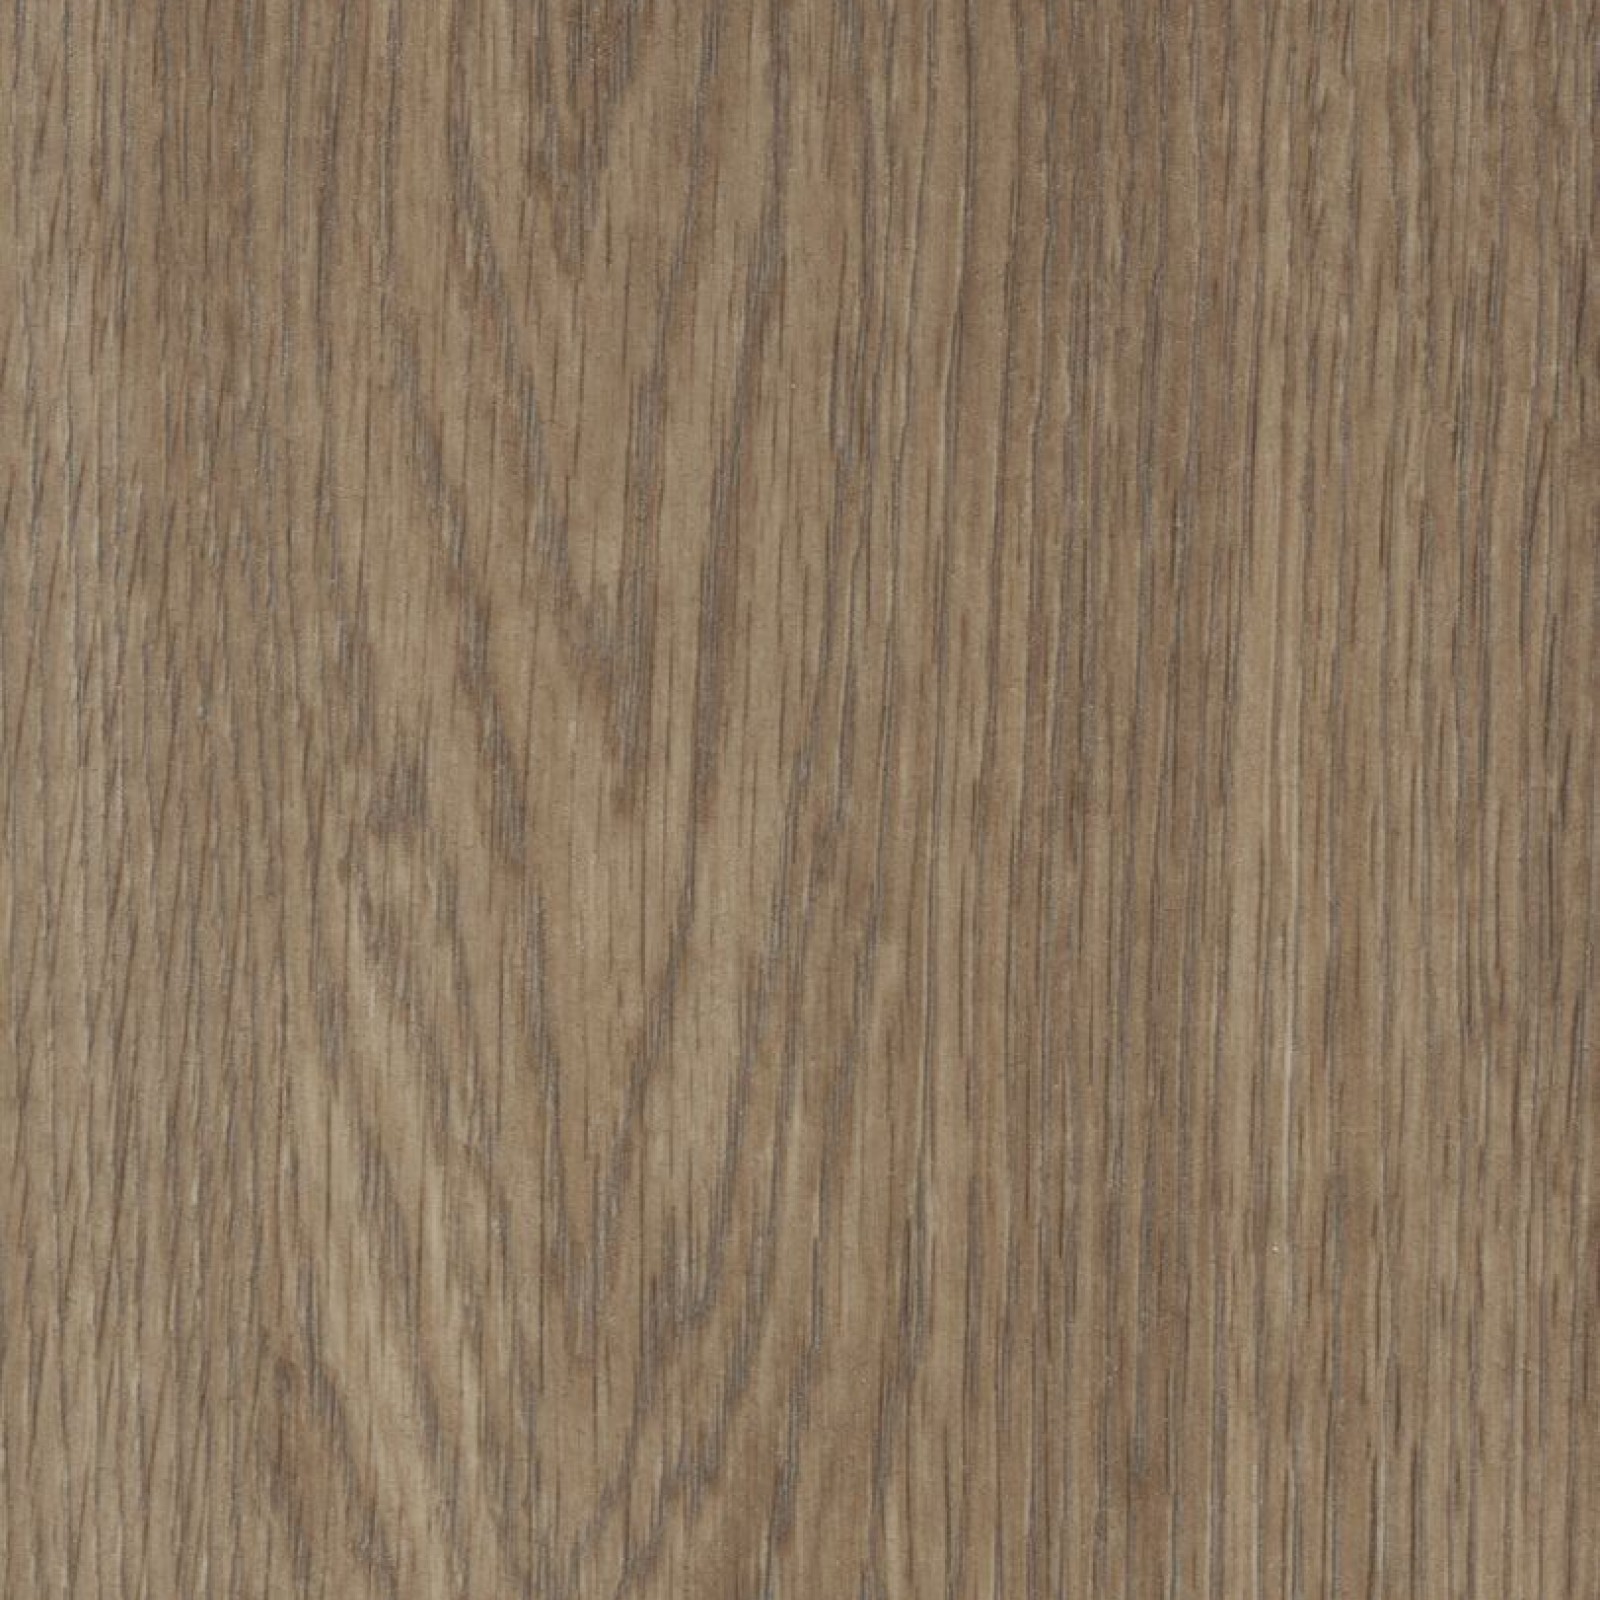 Vzor - 60374DR natural collage oak